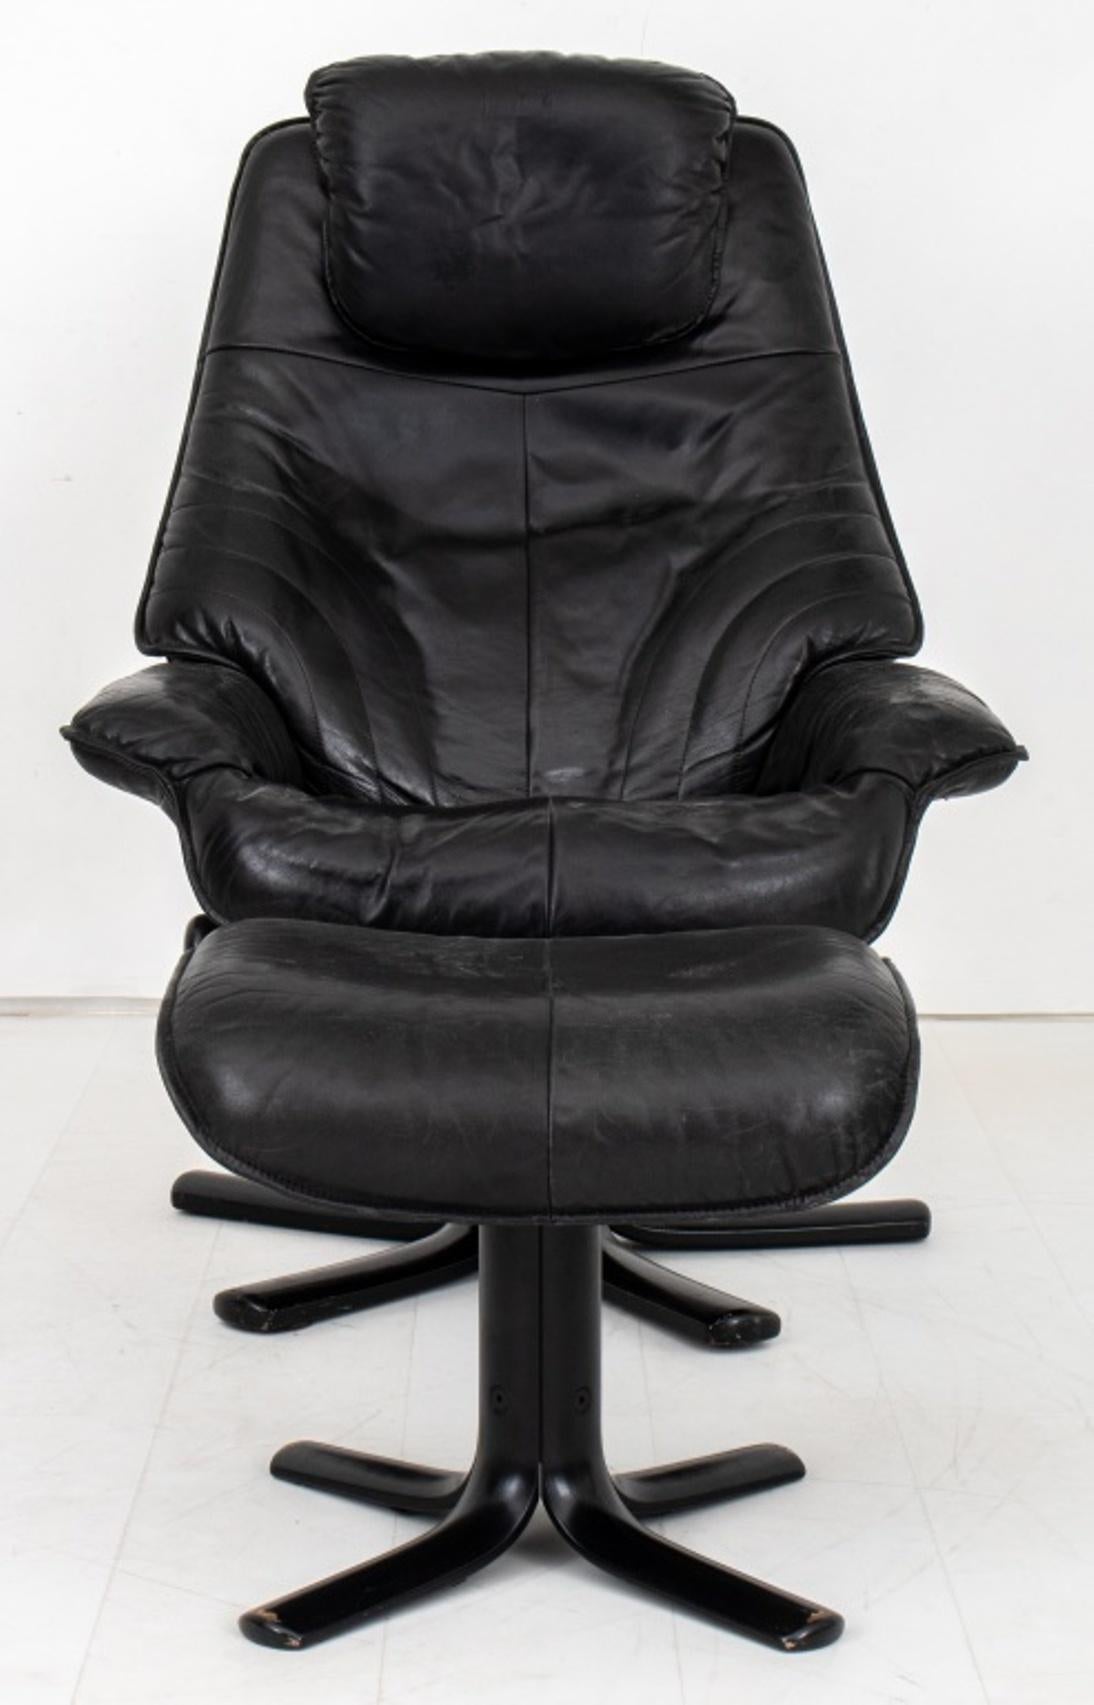 Moderner dänischer Stuhl und Ottomane aus schwarzem Leder, mit gepolstertem Sitz und gepolsterten Armlehnen, auf einem fünffüßigen Sternfuß.
Abmessungen: 42